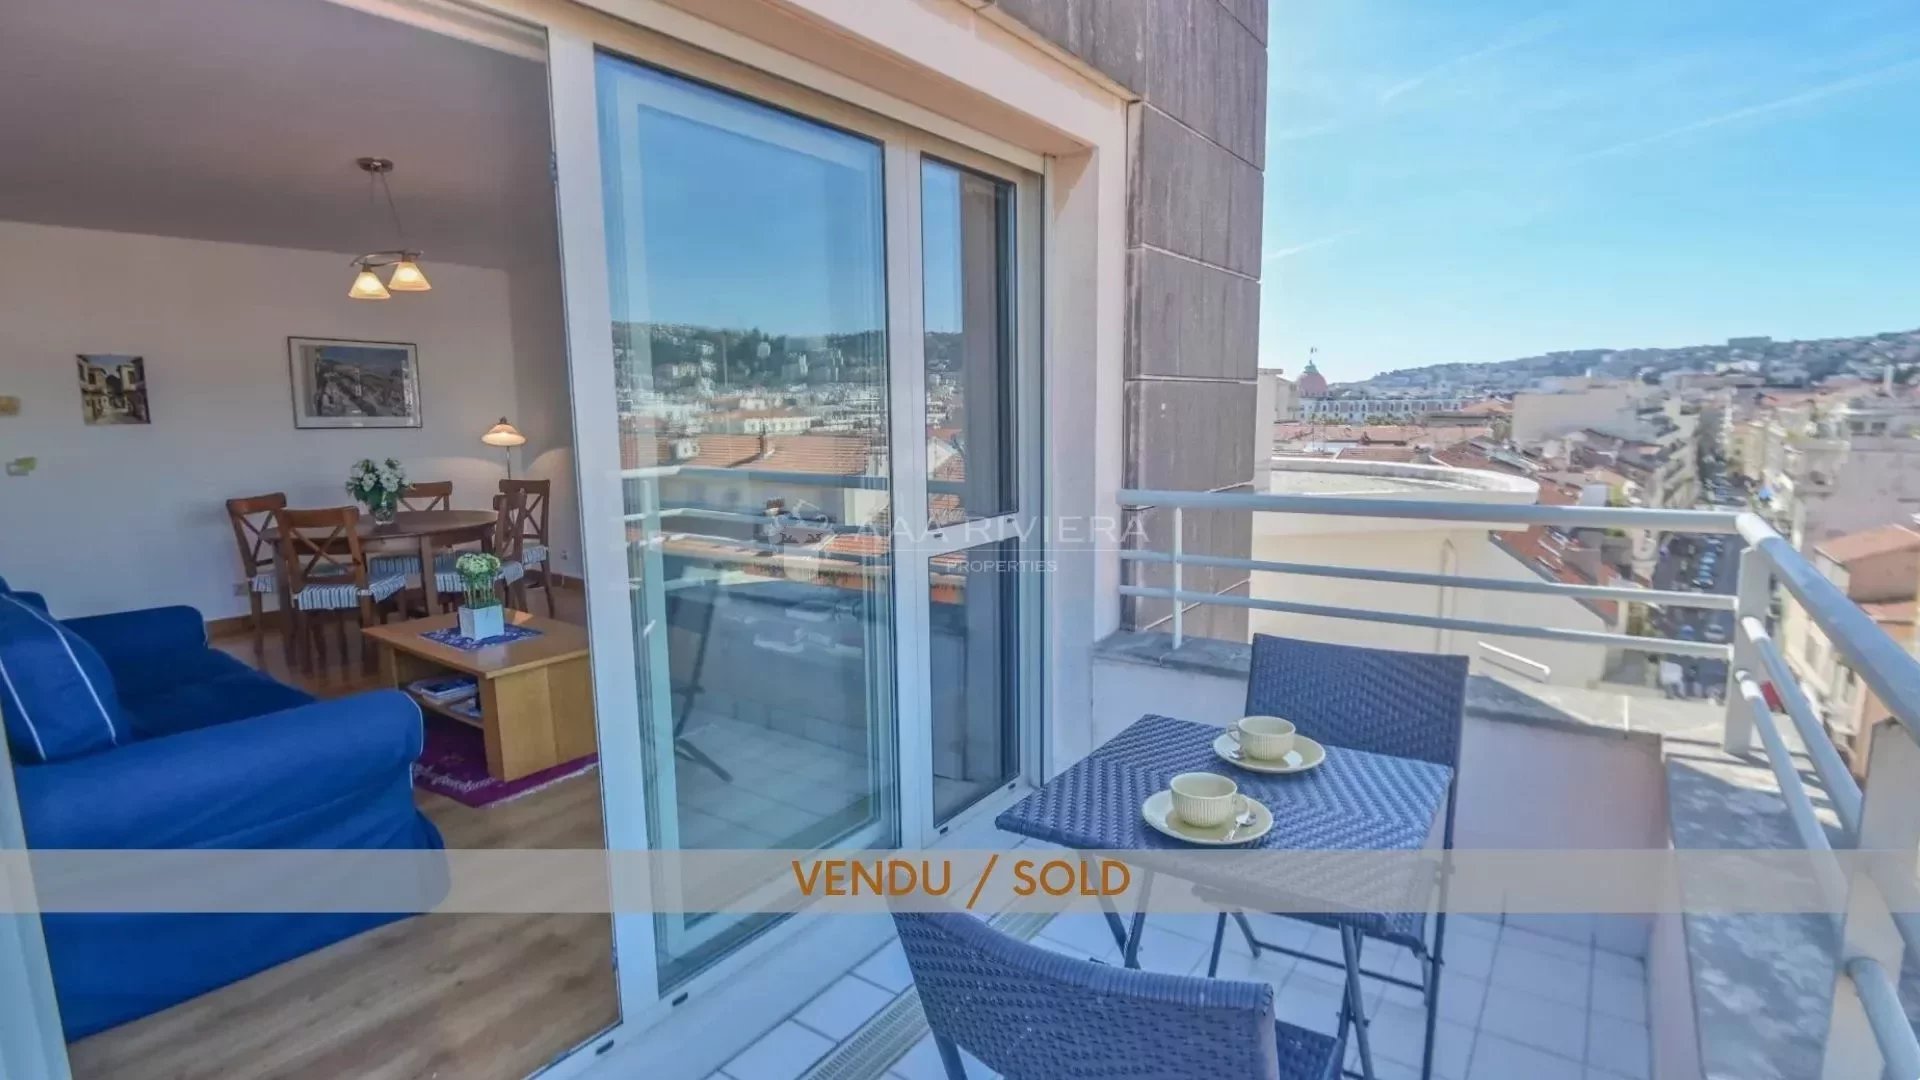 VENDU - EXCLUSIVITE - Nice Carré d'Or - Lumineux 3p en dernier étage avec terrasses et vue panoramique